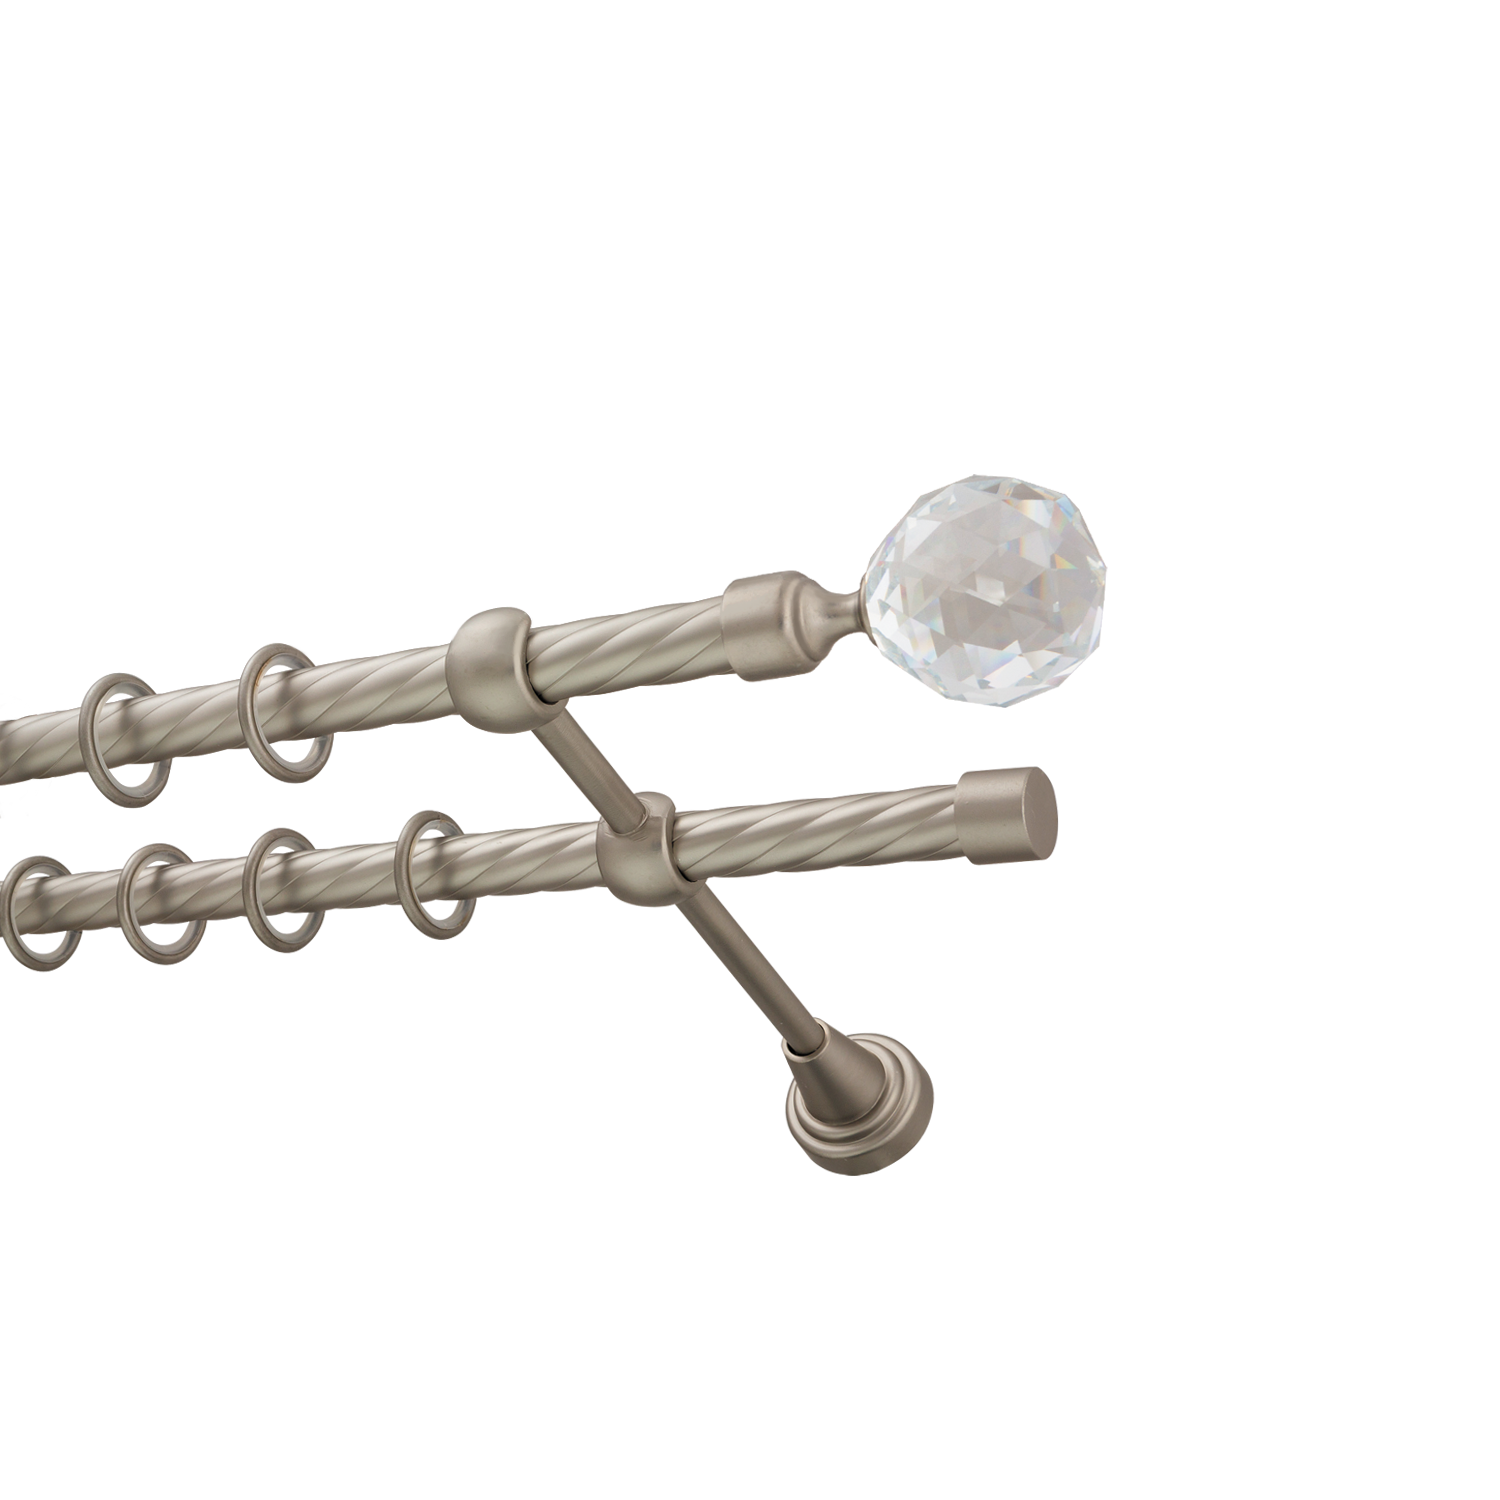 Металлический карниз для штор Карат, двухрядный 16/16 мм, сталь, витая штанга, длина 300 см - фото Wikidecor.ru